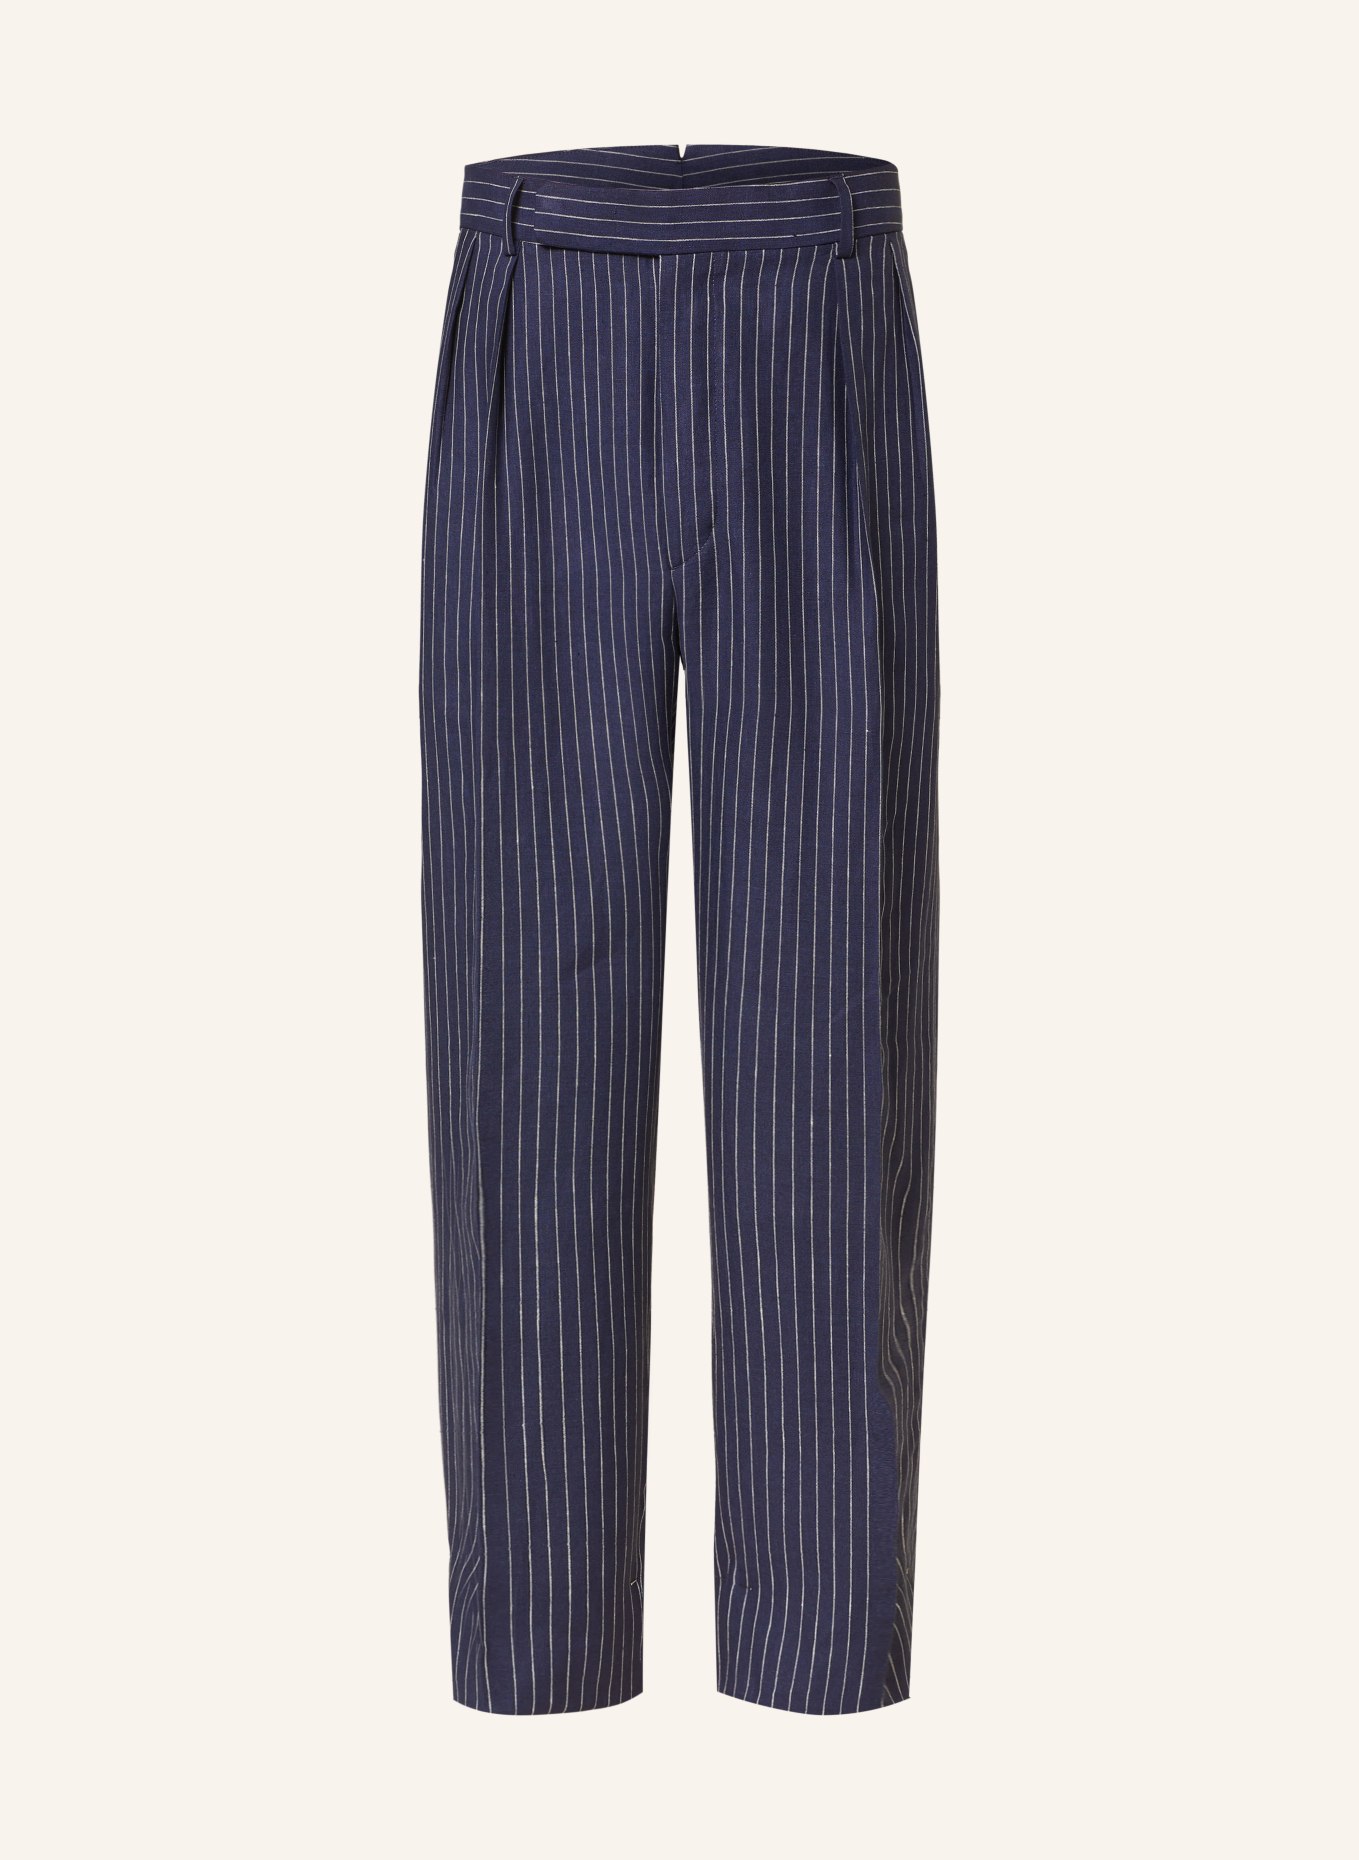 RALPH LAUREN PURPLE LABEL Linen trousers regular fit, Color: DARK BLUE/ WHITE (Image 1)